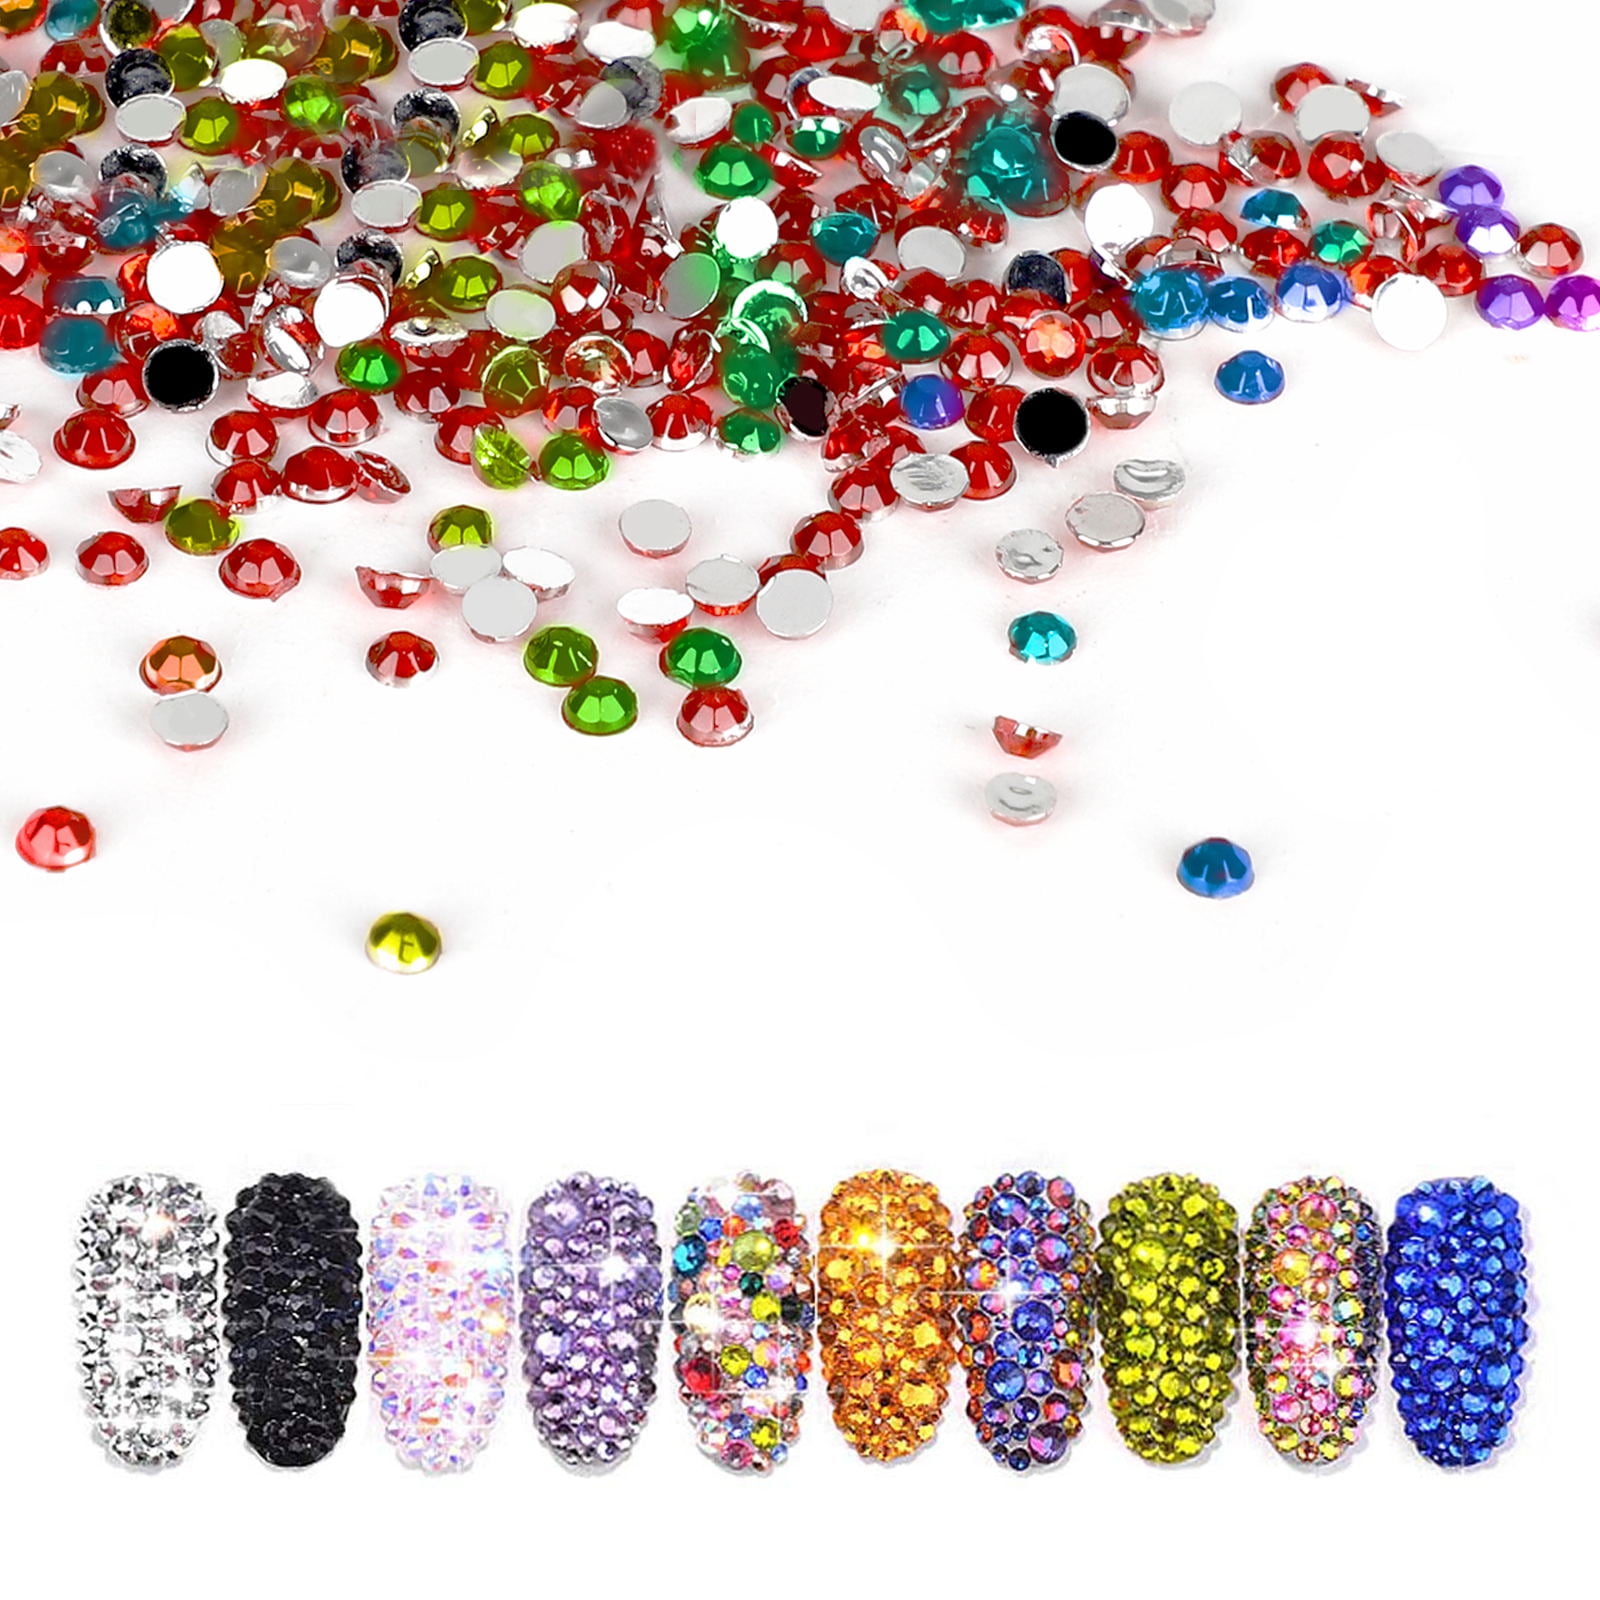 JESOT Nail Gems, 5500PCS Rhinestones for Nails Colorful Nail